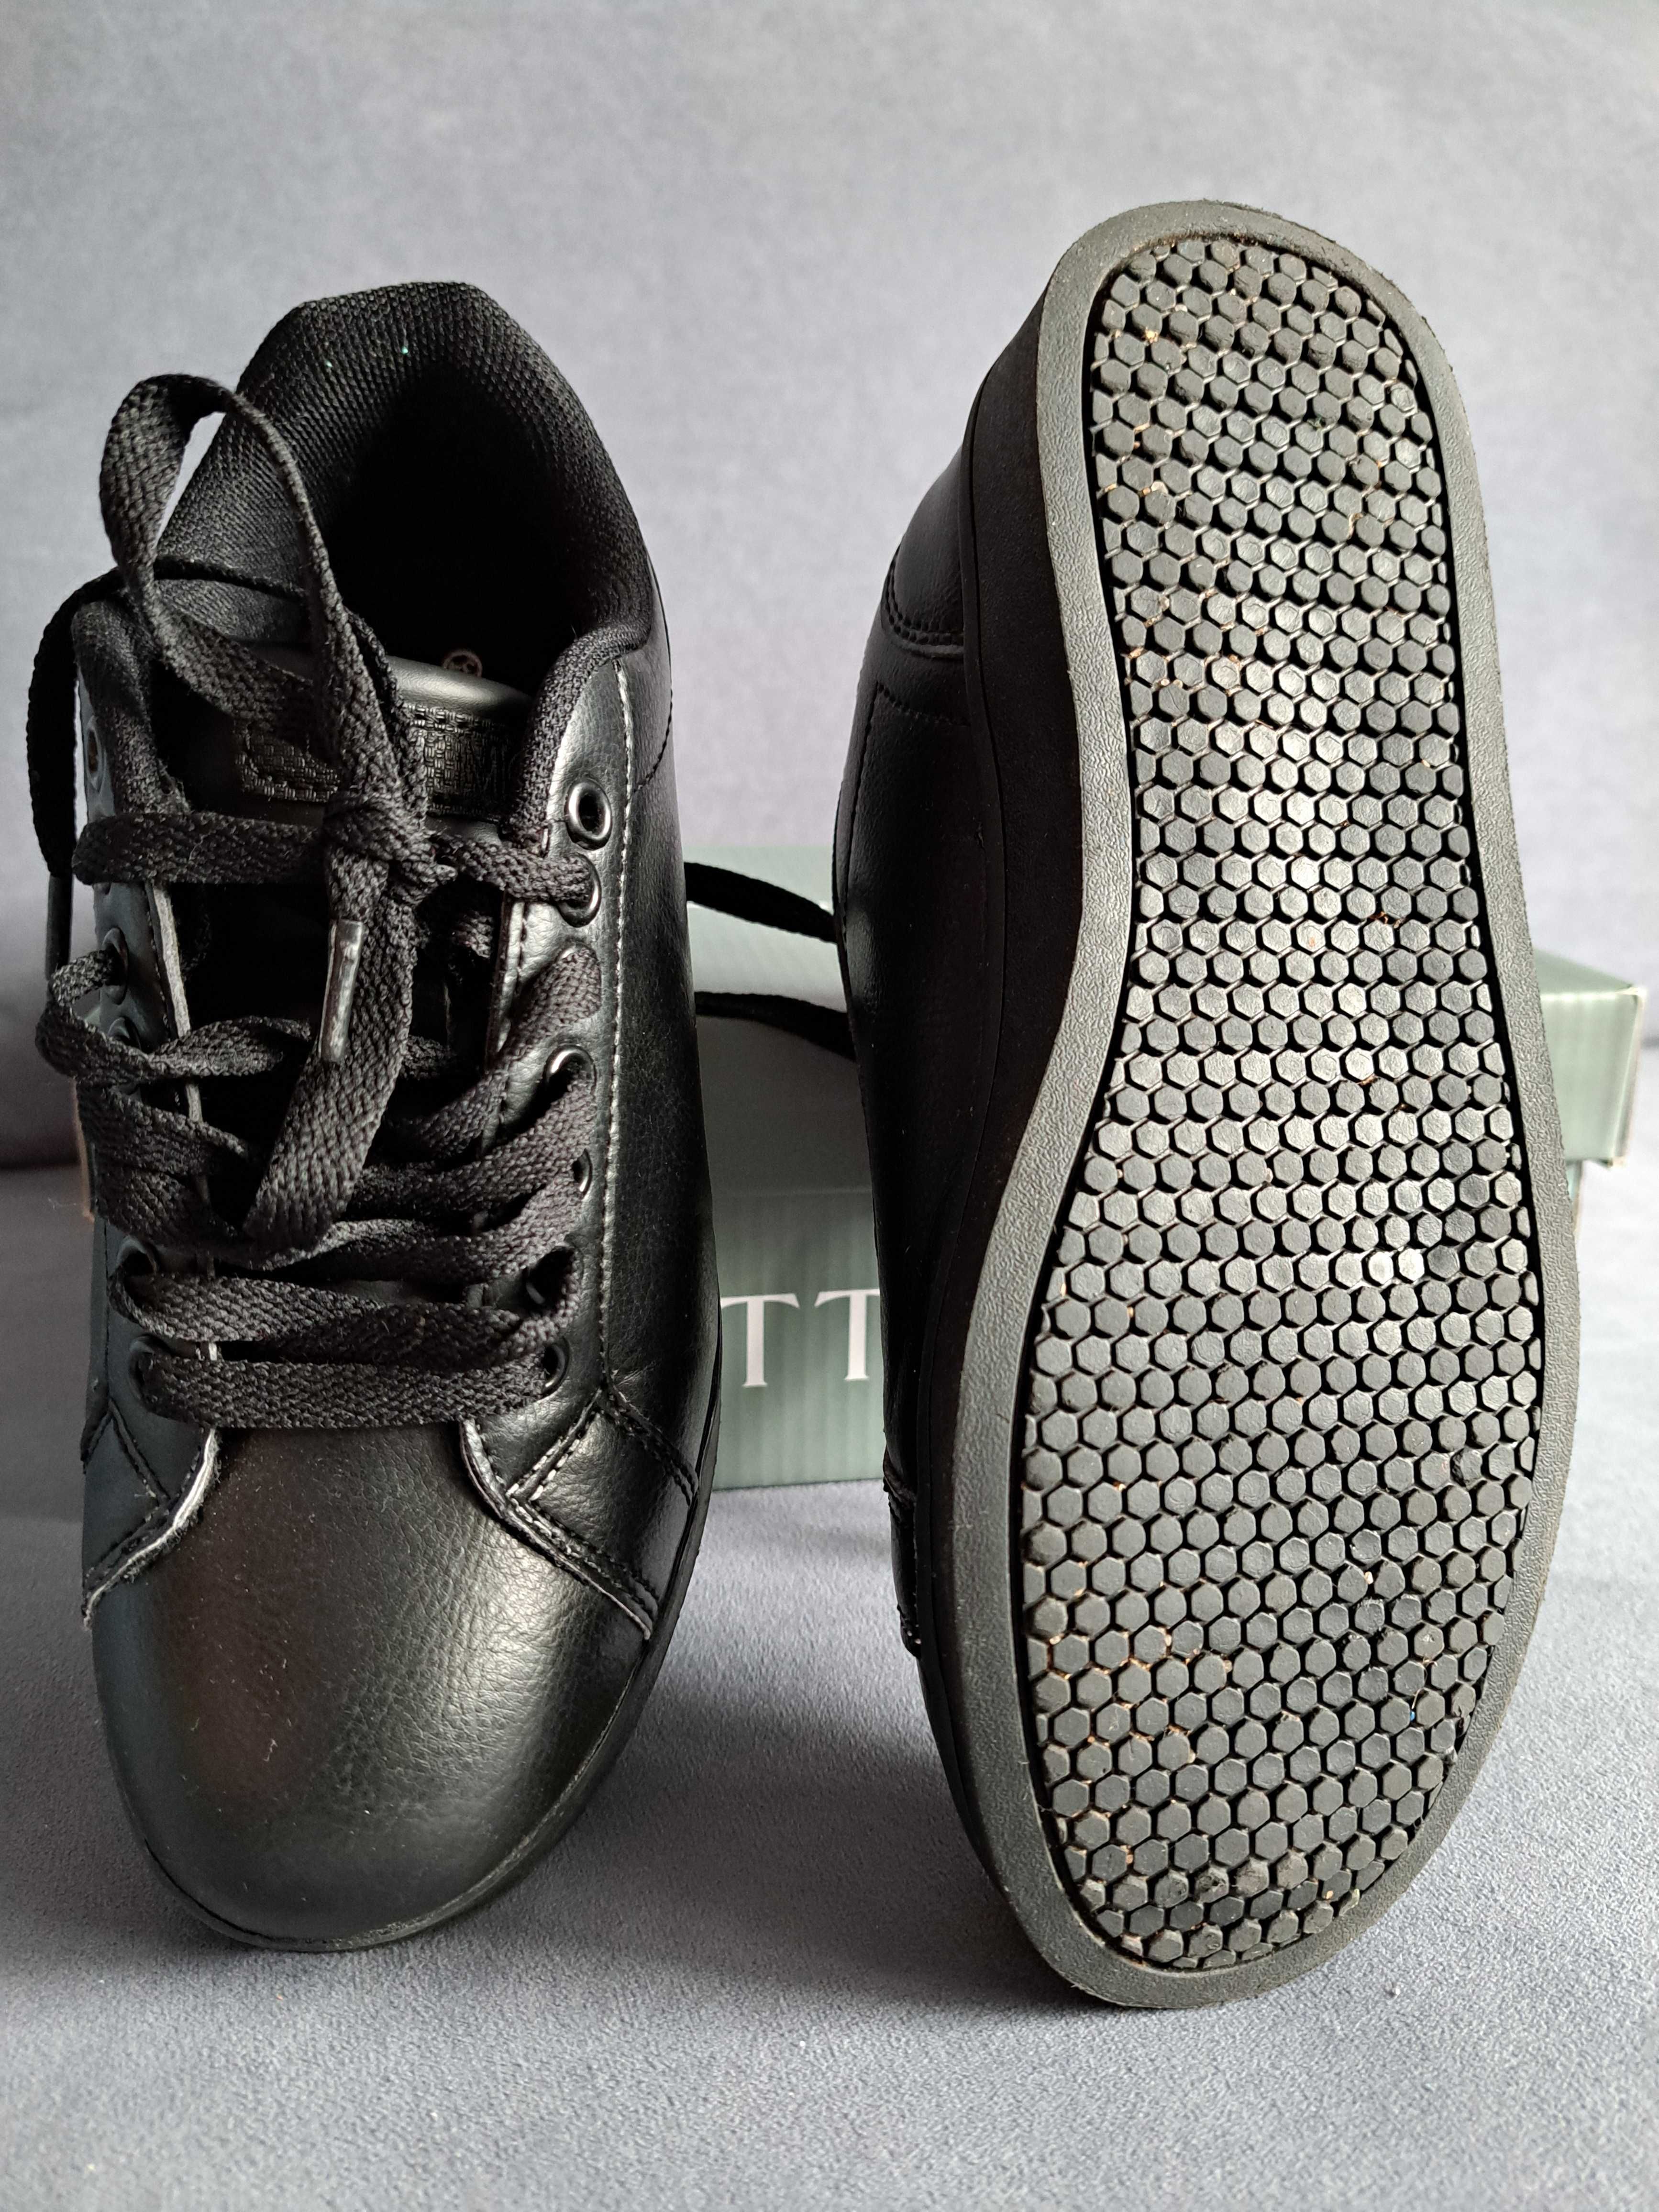 Czarne komunijne wiązane eleganckie buty Ottimo Ccc, rozmiar 34, ideał